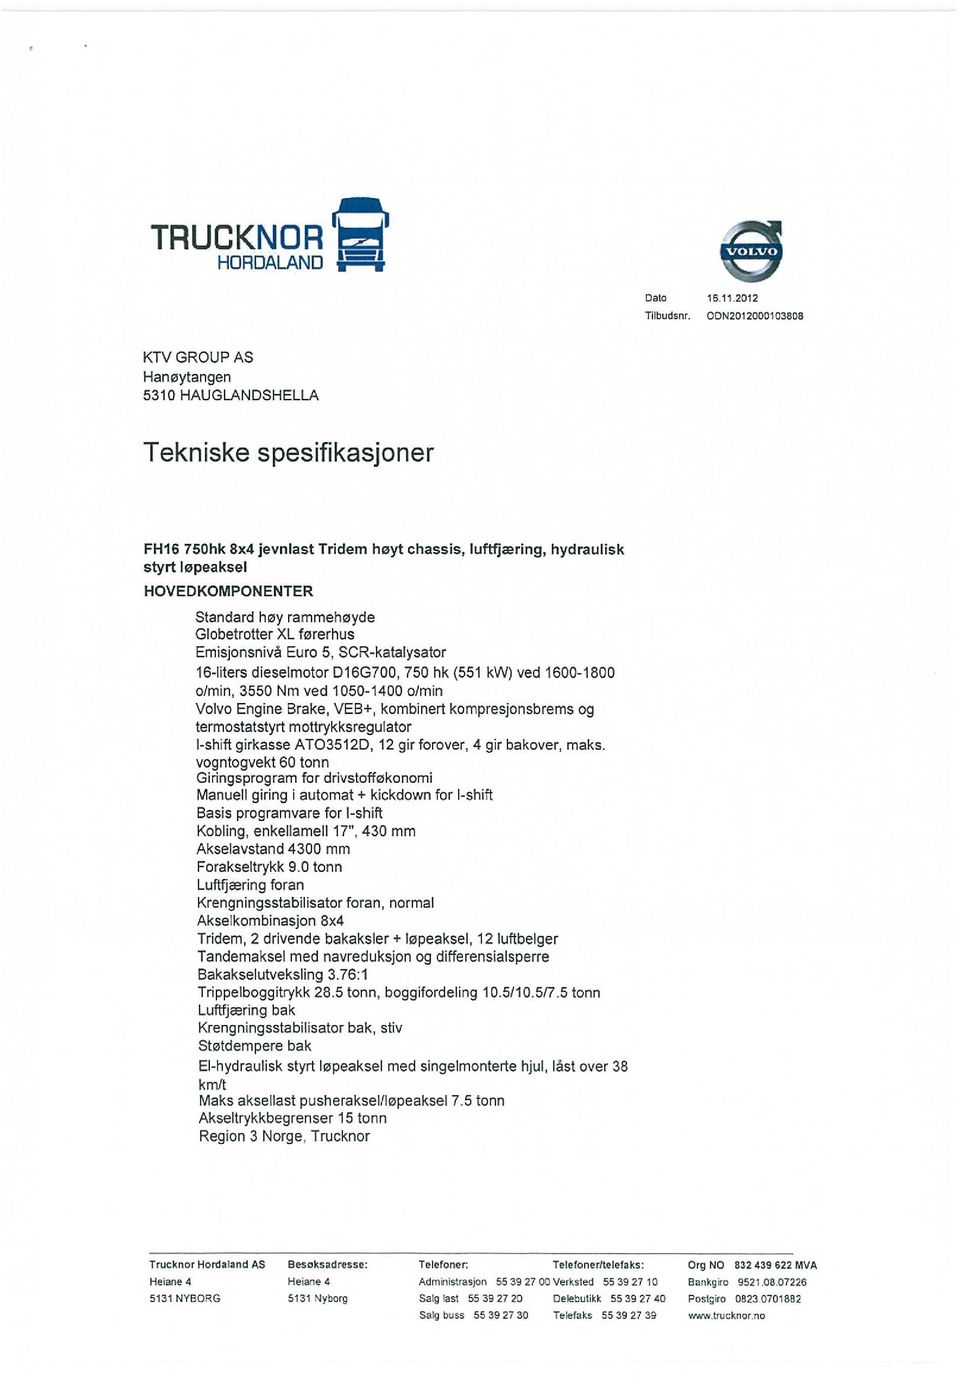 høy rammehøyde Globetrotter XL fererhus Emisjonsnivå Evro 5, SCR-katalysator 16-liters dieselmotor D16G700, 750 hk (551 kw) ved 1600-1800 o)min, 3550 Nm ved 1050-1400 0/min Volvo Engine Brake, VEB+,